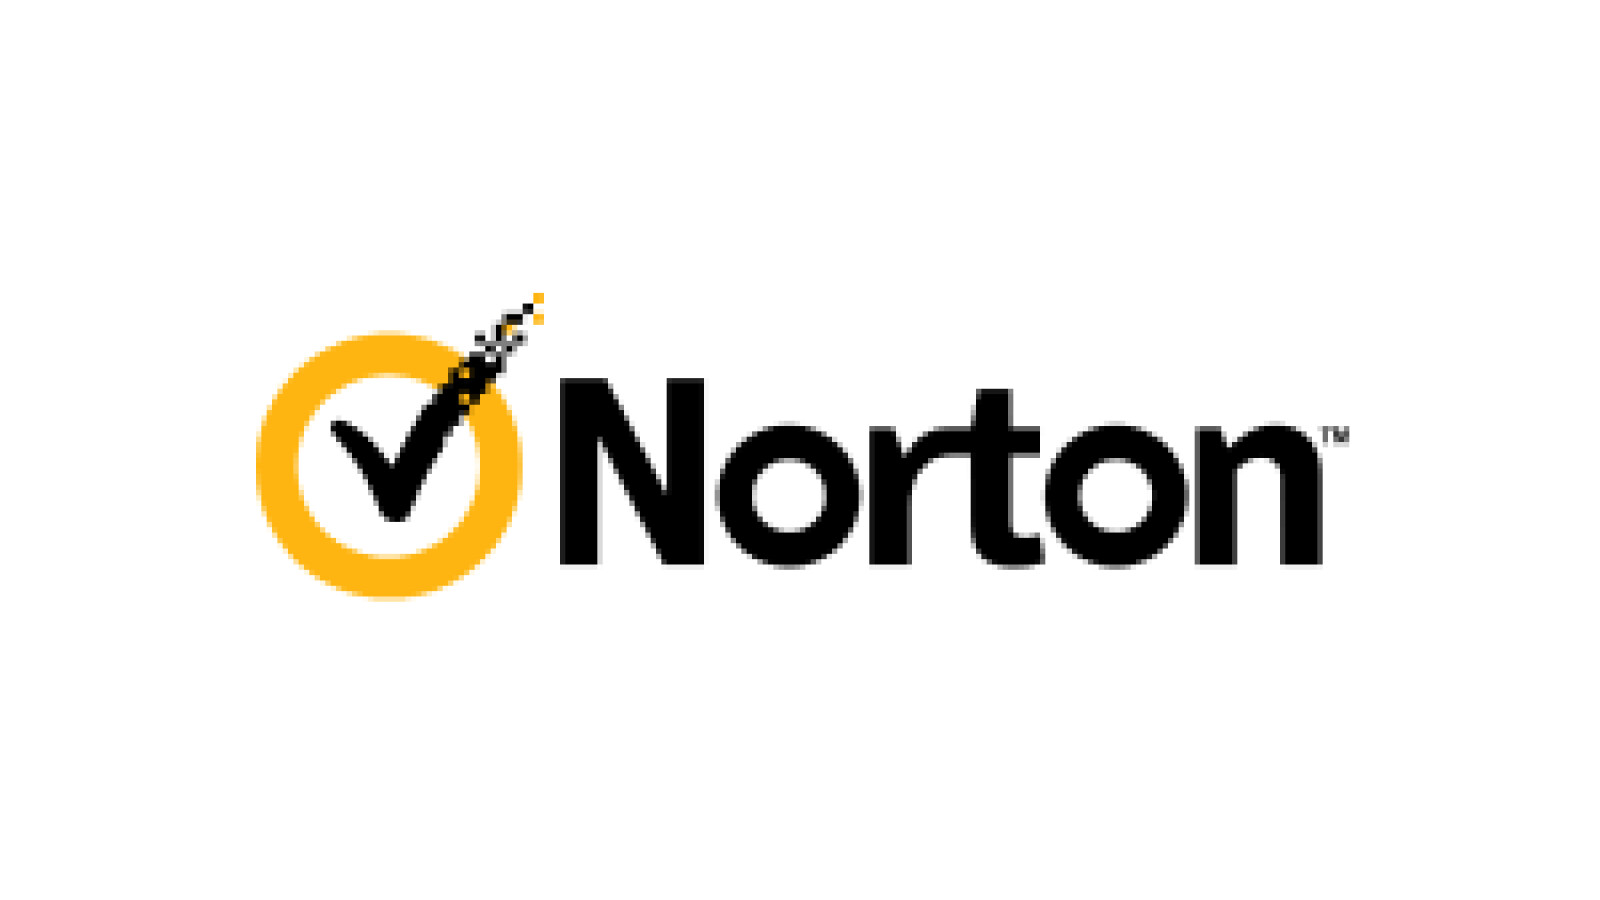 norton utilities premium free with norton 360